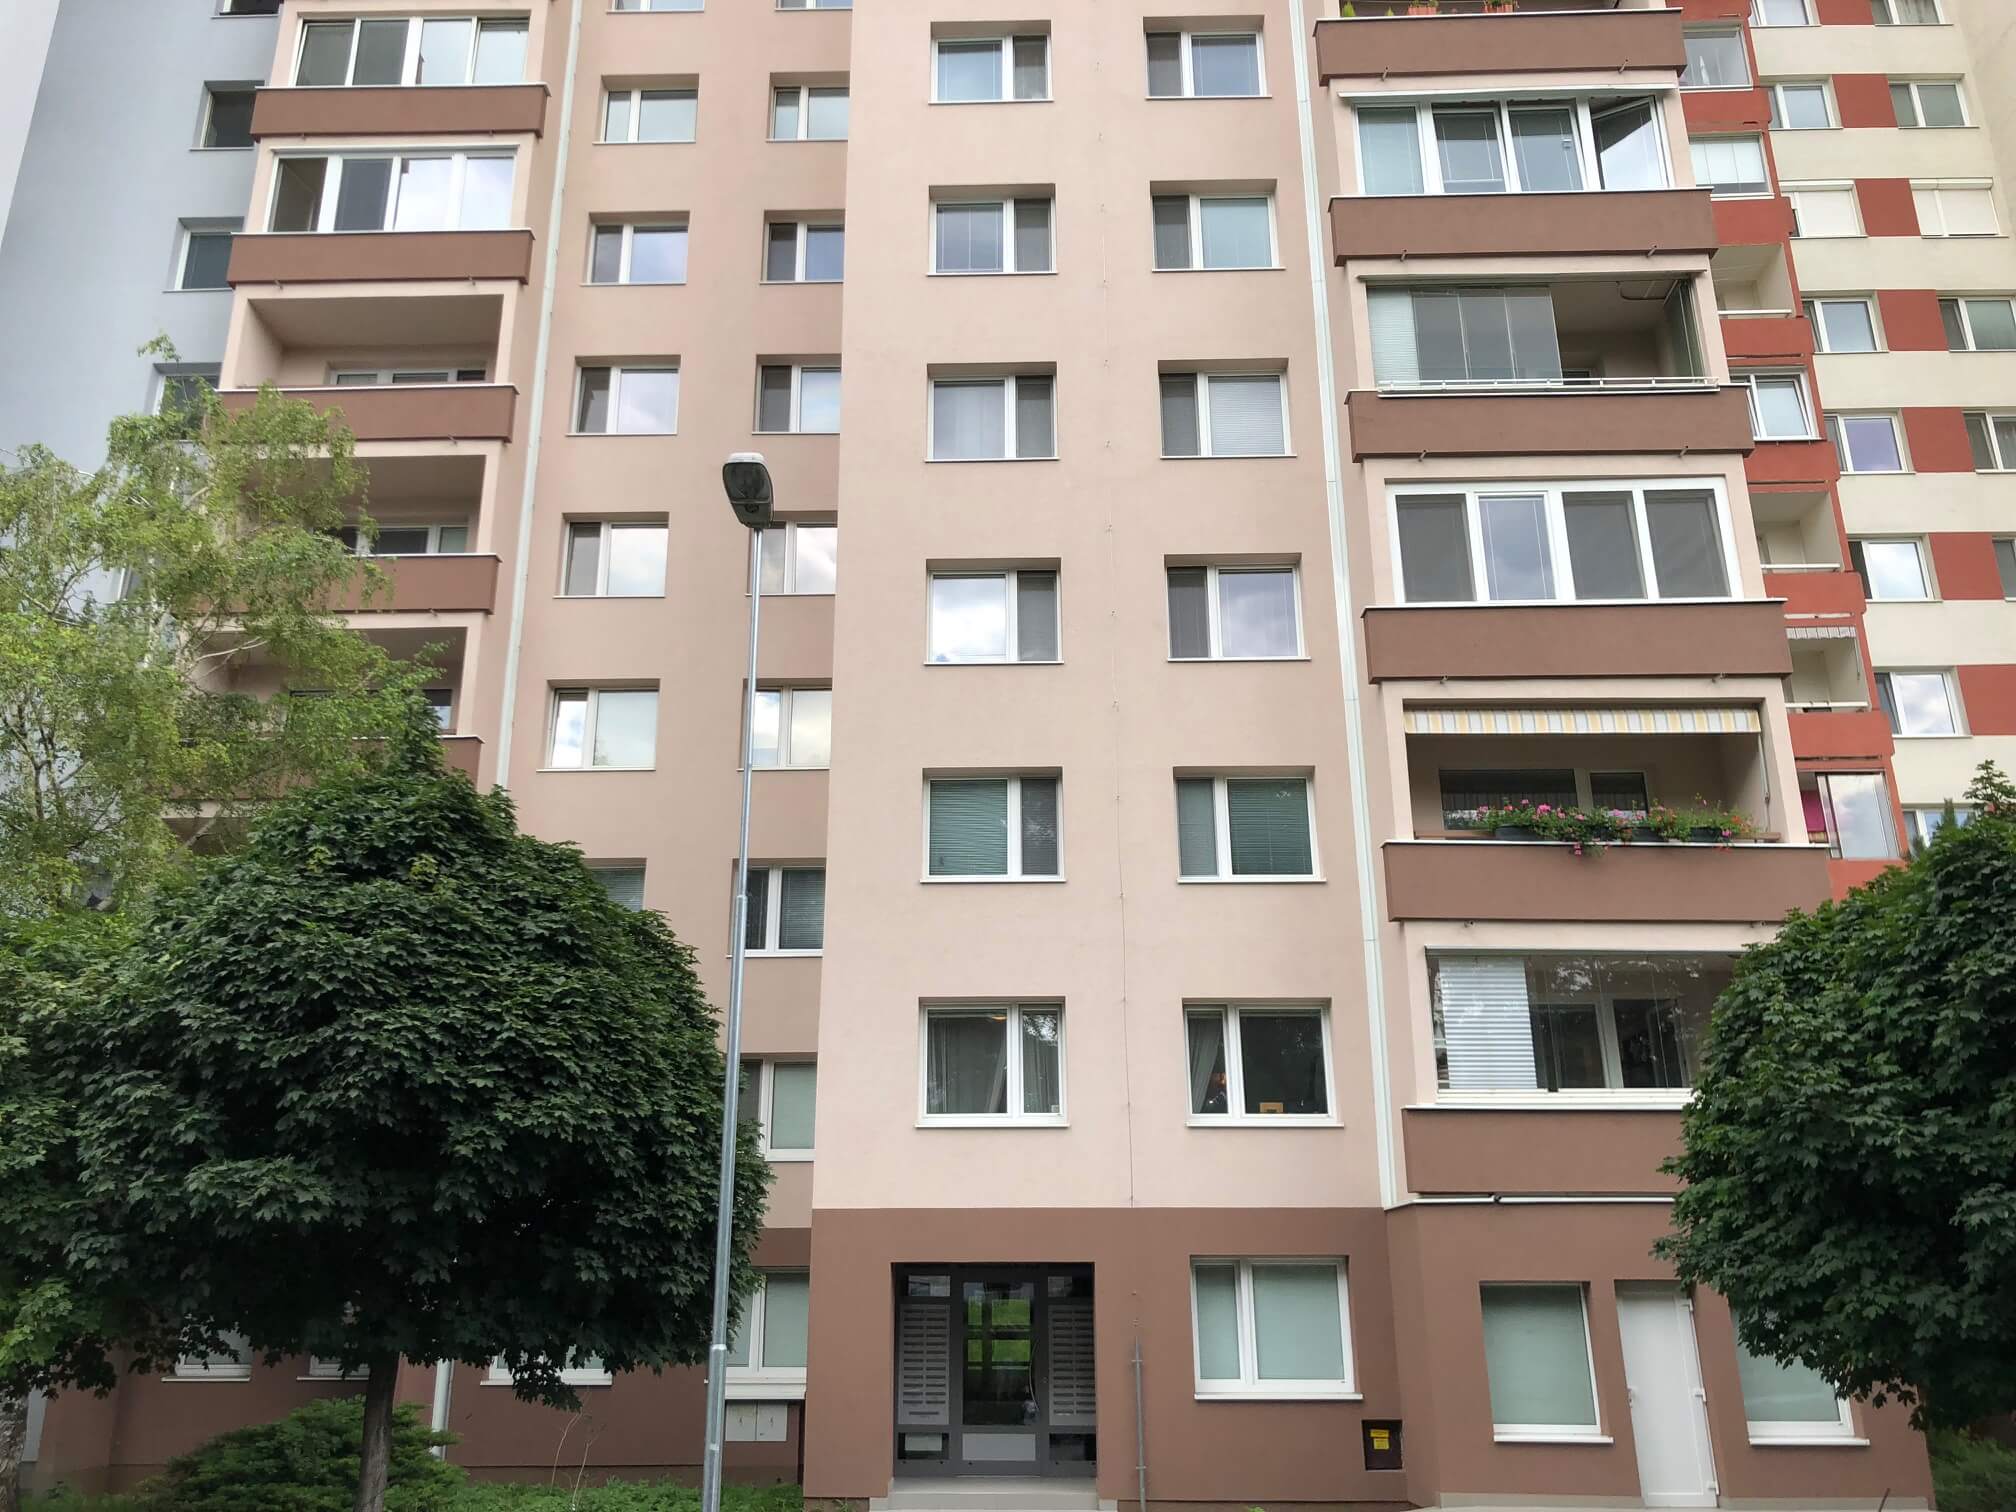 Predané Predaj exkluzívneho 3 izb. bytu,v Ružinove, ulica Palkovičová, blízko Trhoviska Miletičky v Bratislave, 68m2, kompletne zariadený-6